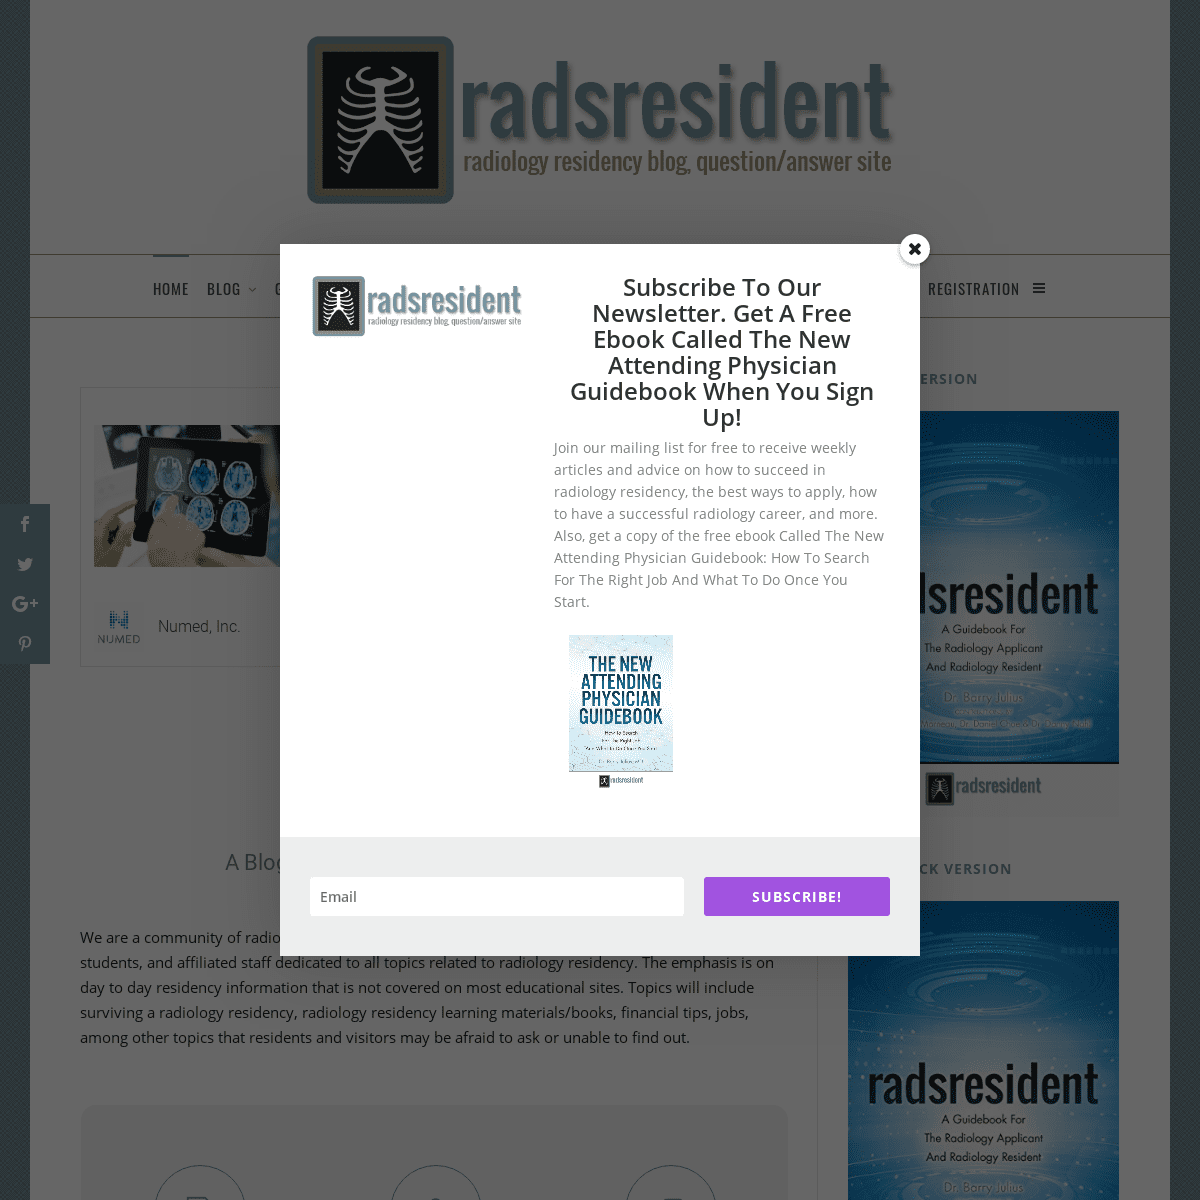 A complete backup of radsresident.com